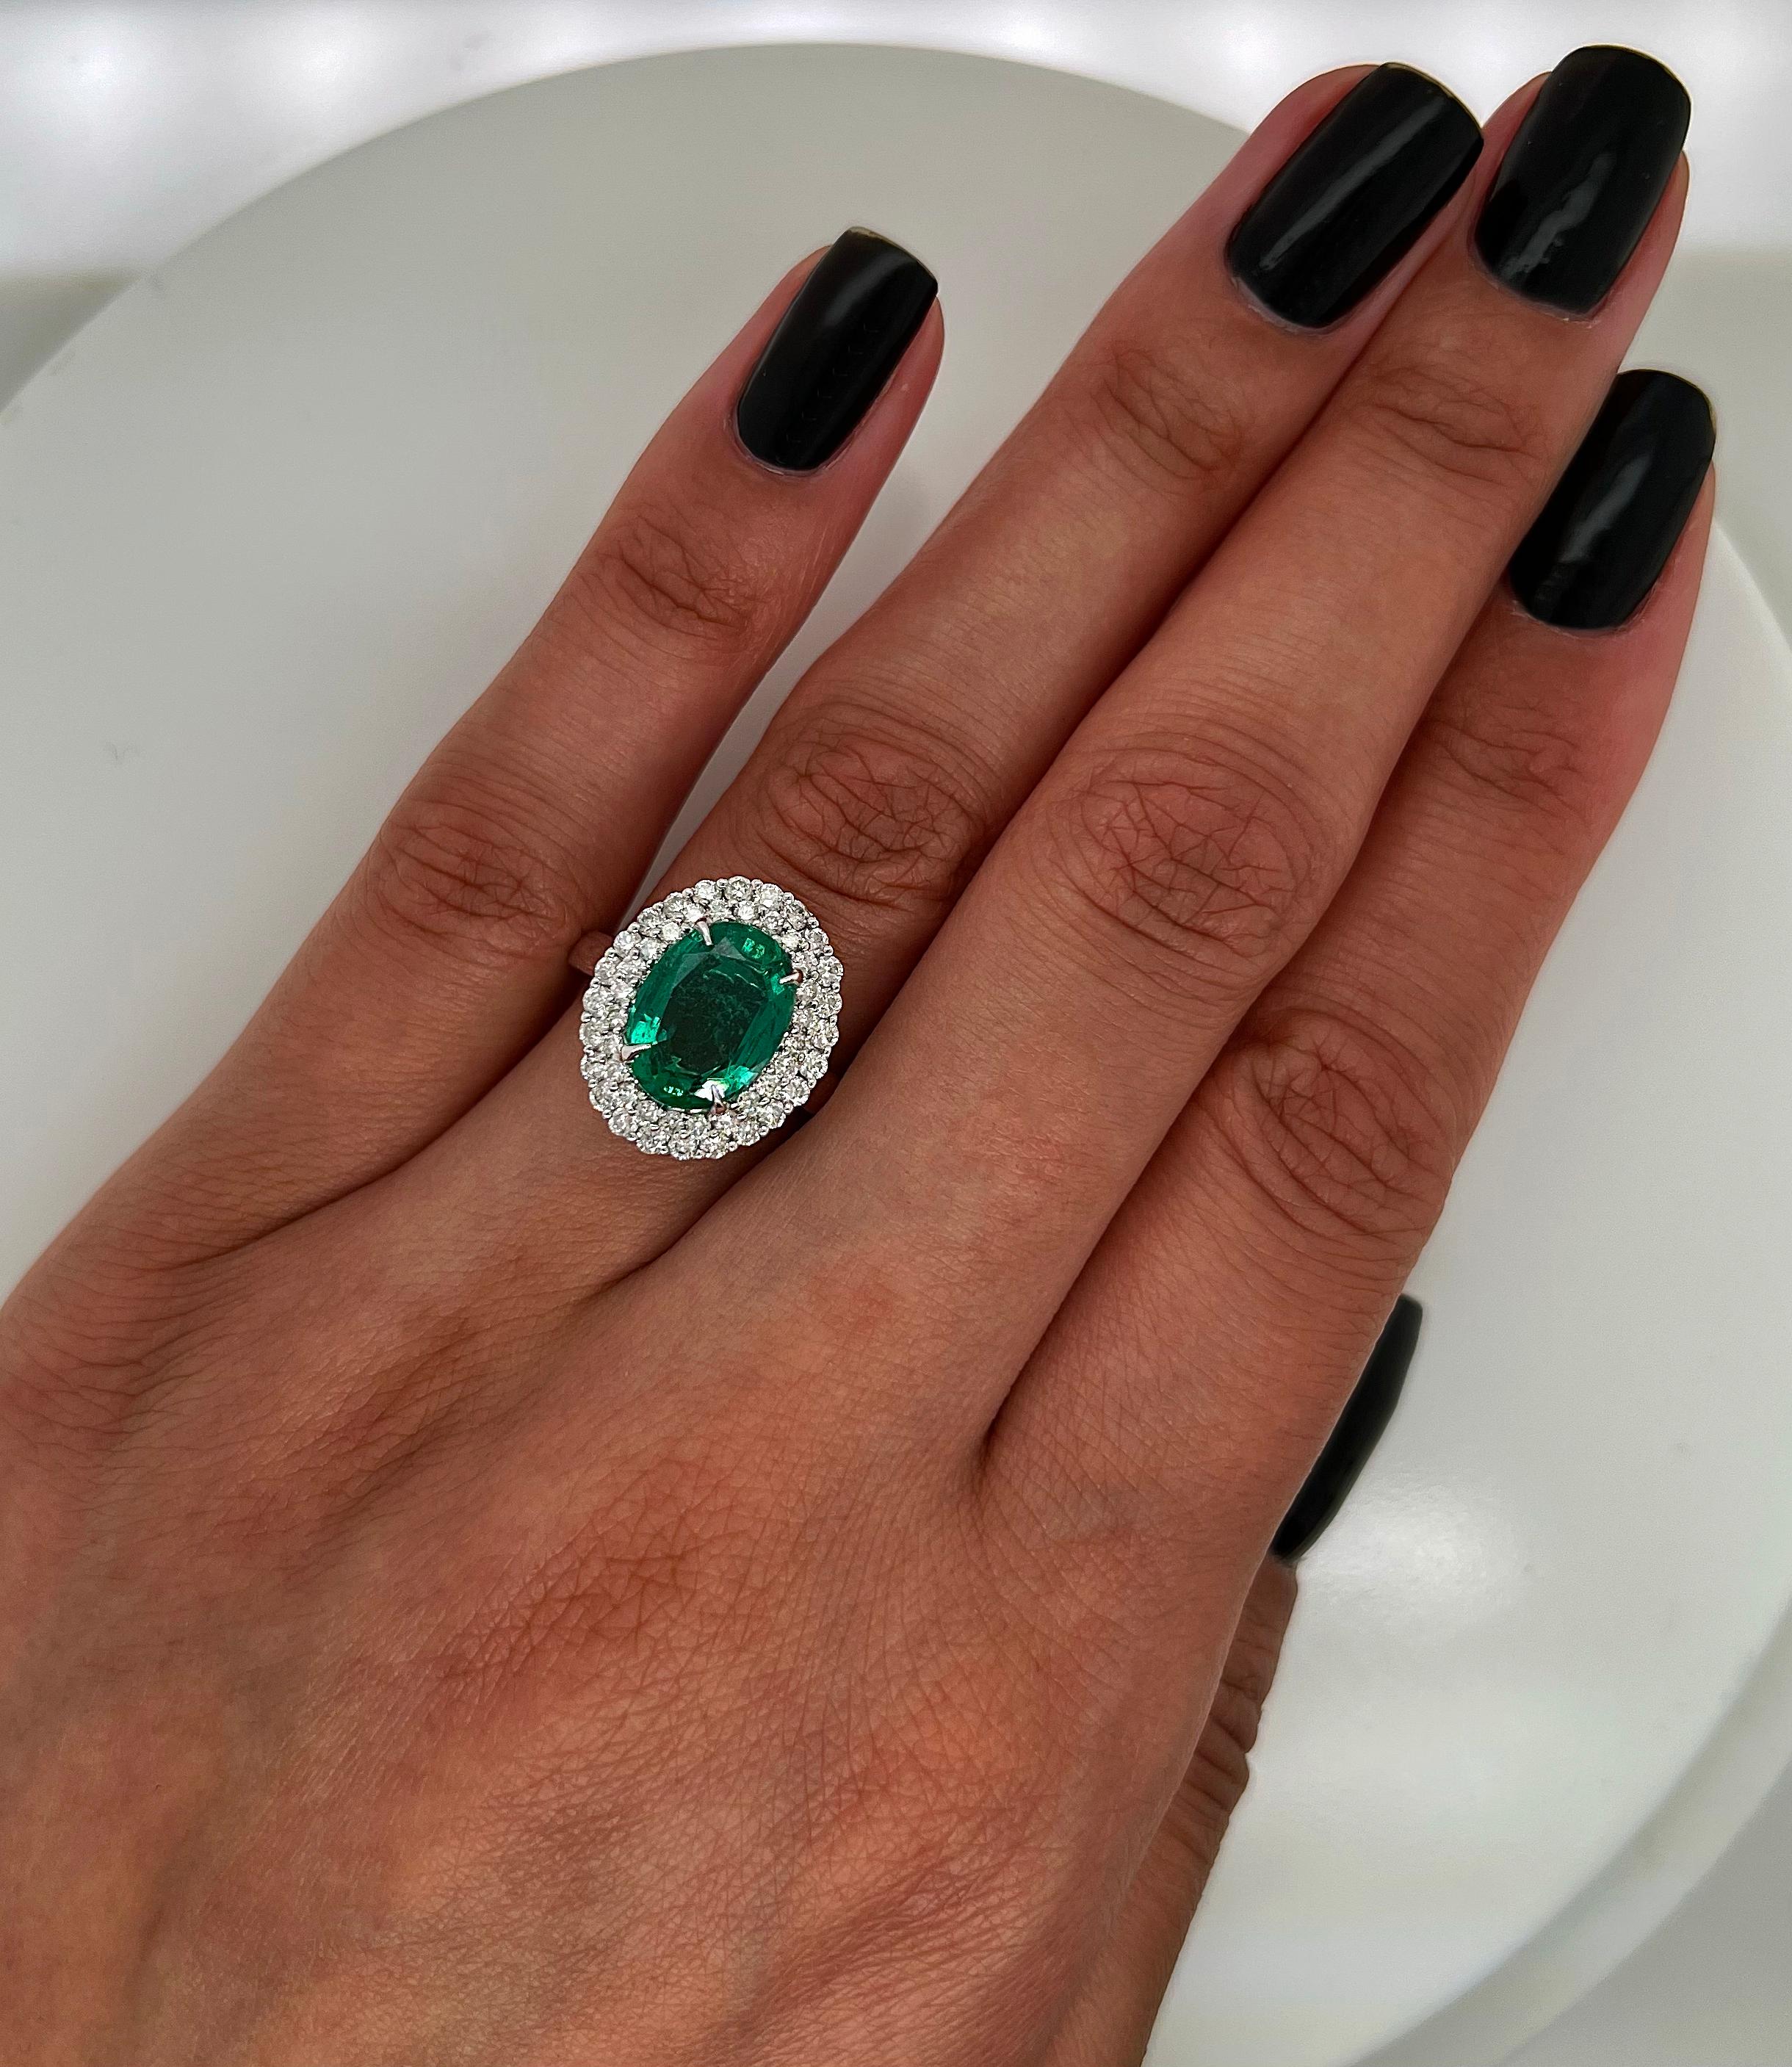 2.19 total carat green emerald a...